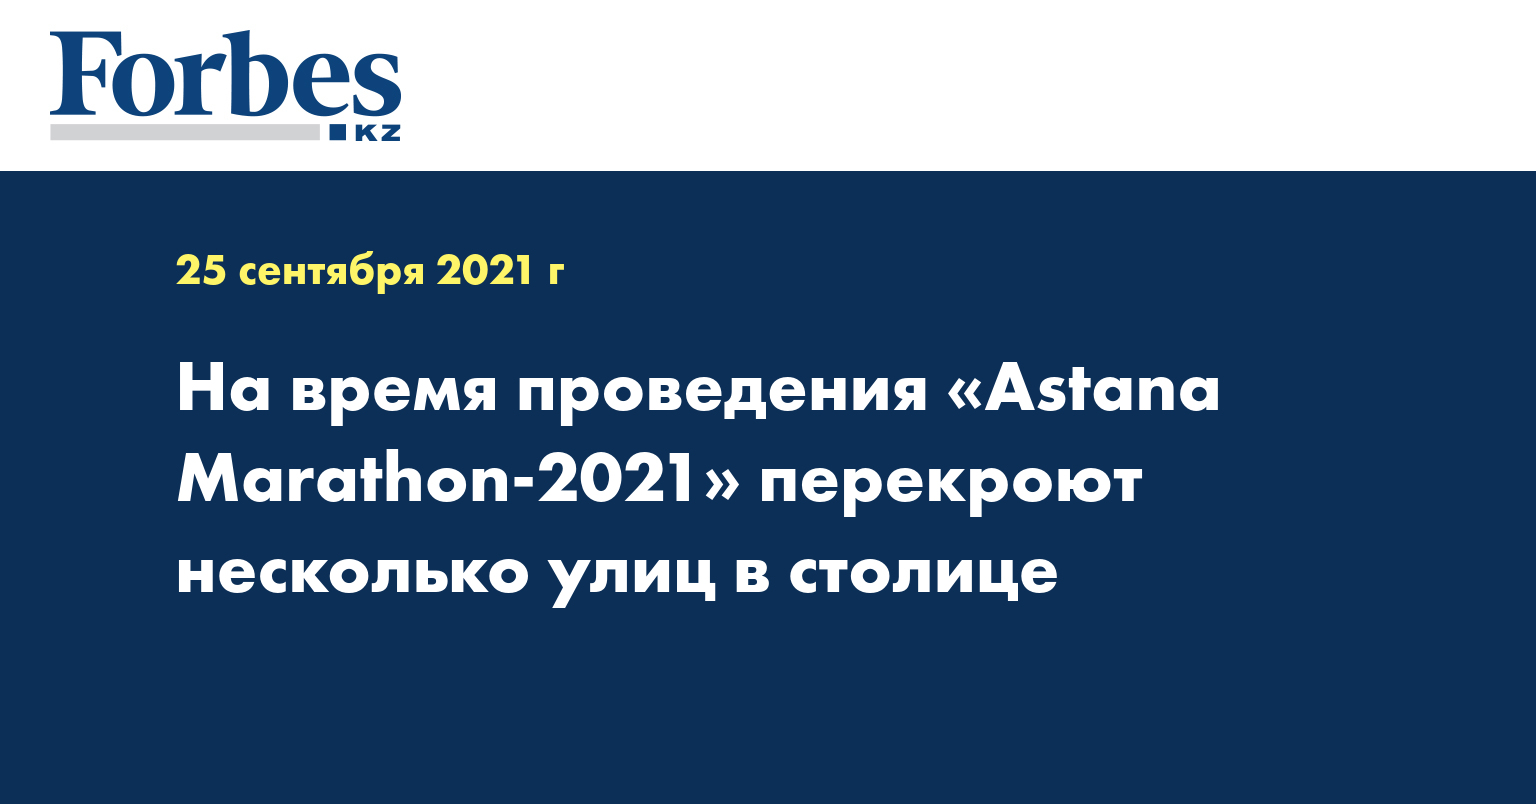 На время проведения «Astana Marathon-2021» перекроют несколько улиц в столице